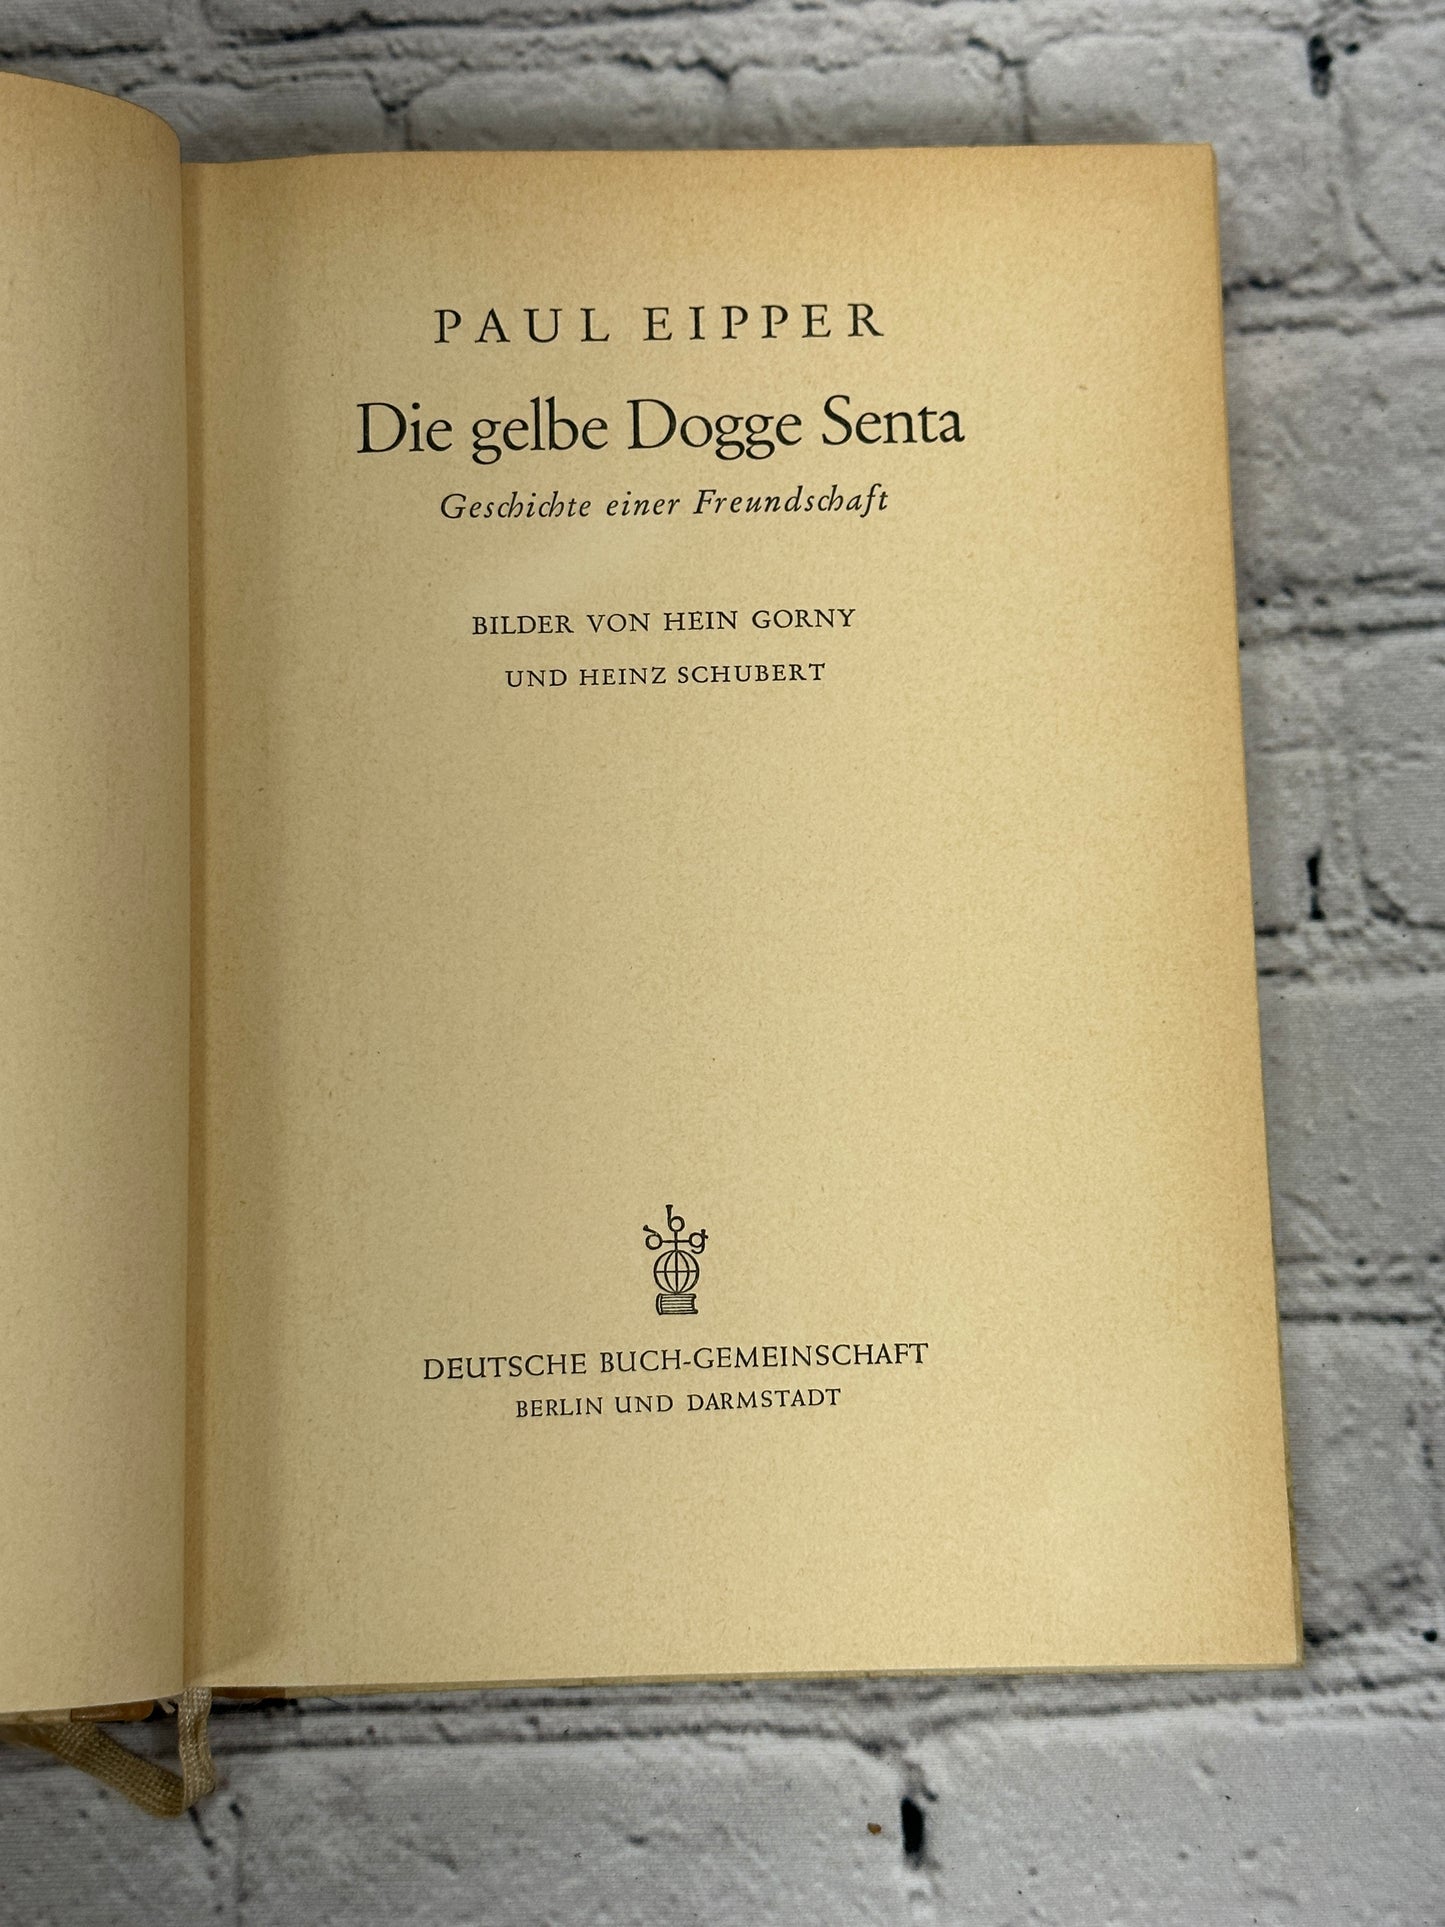 Die gelbe Dogge Senta by Paul Eipper [1953]